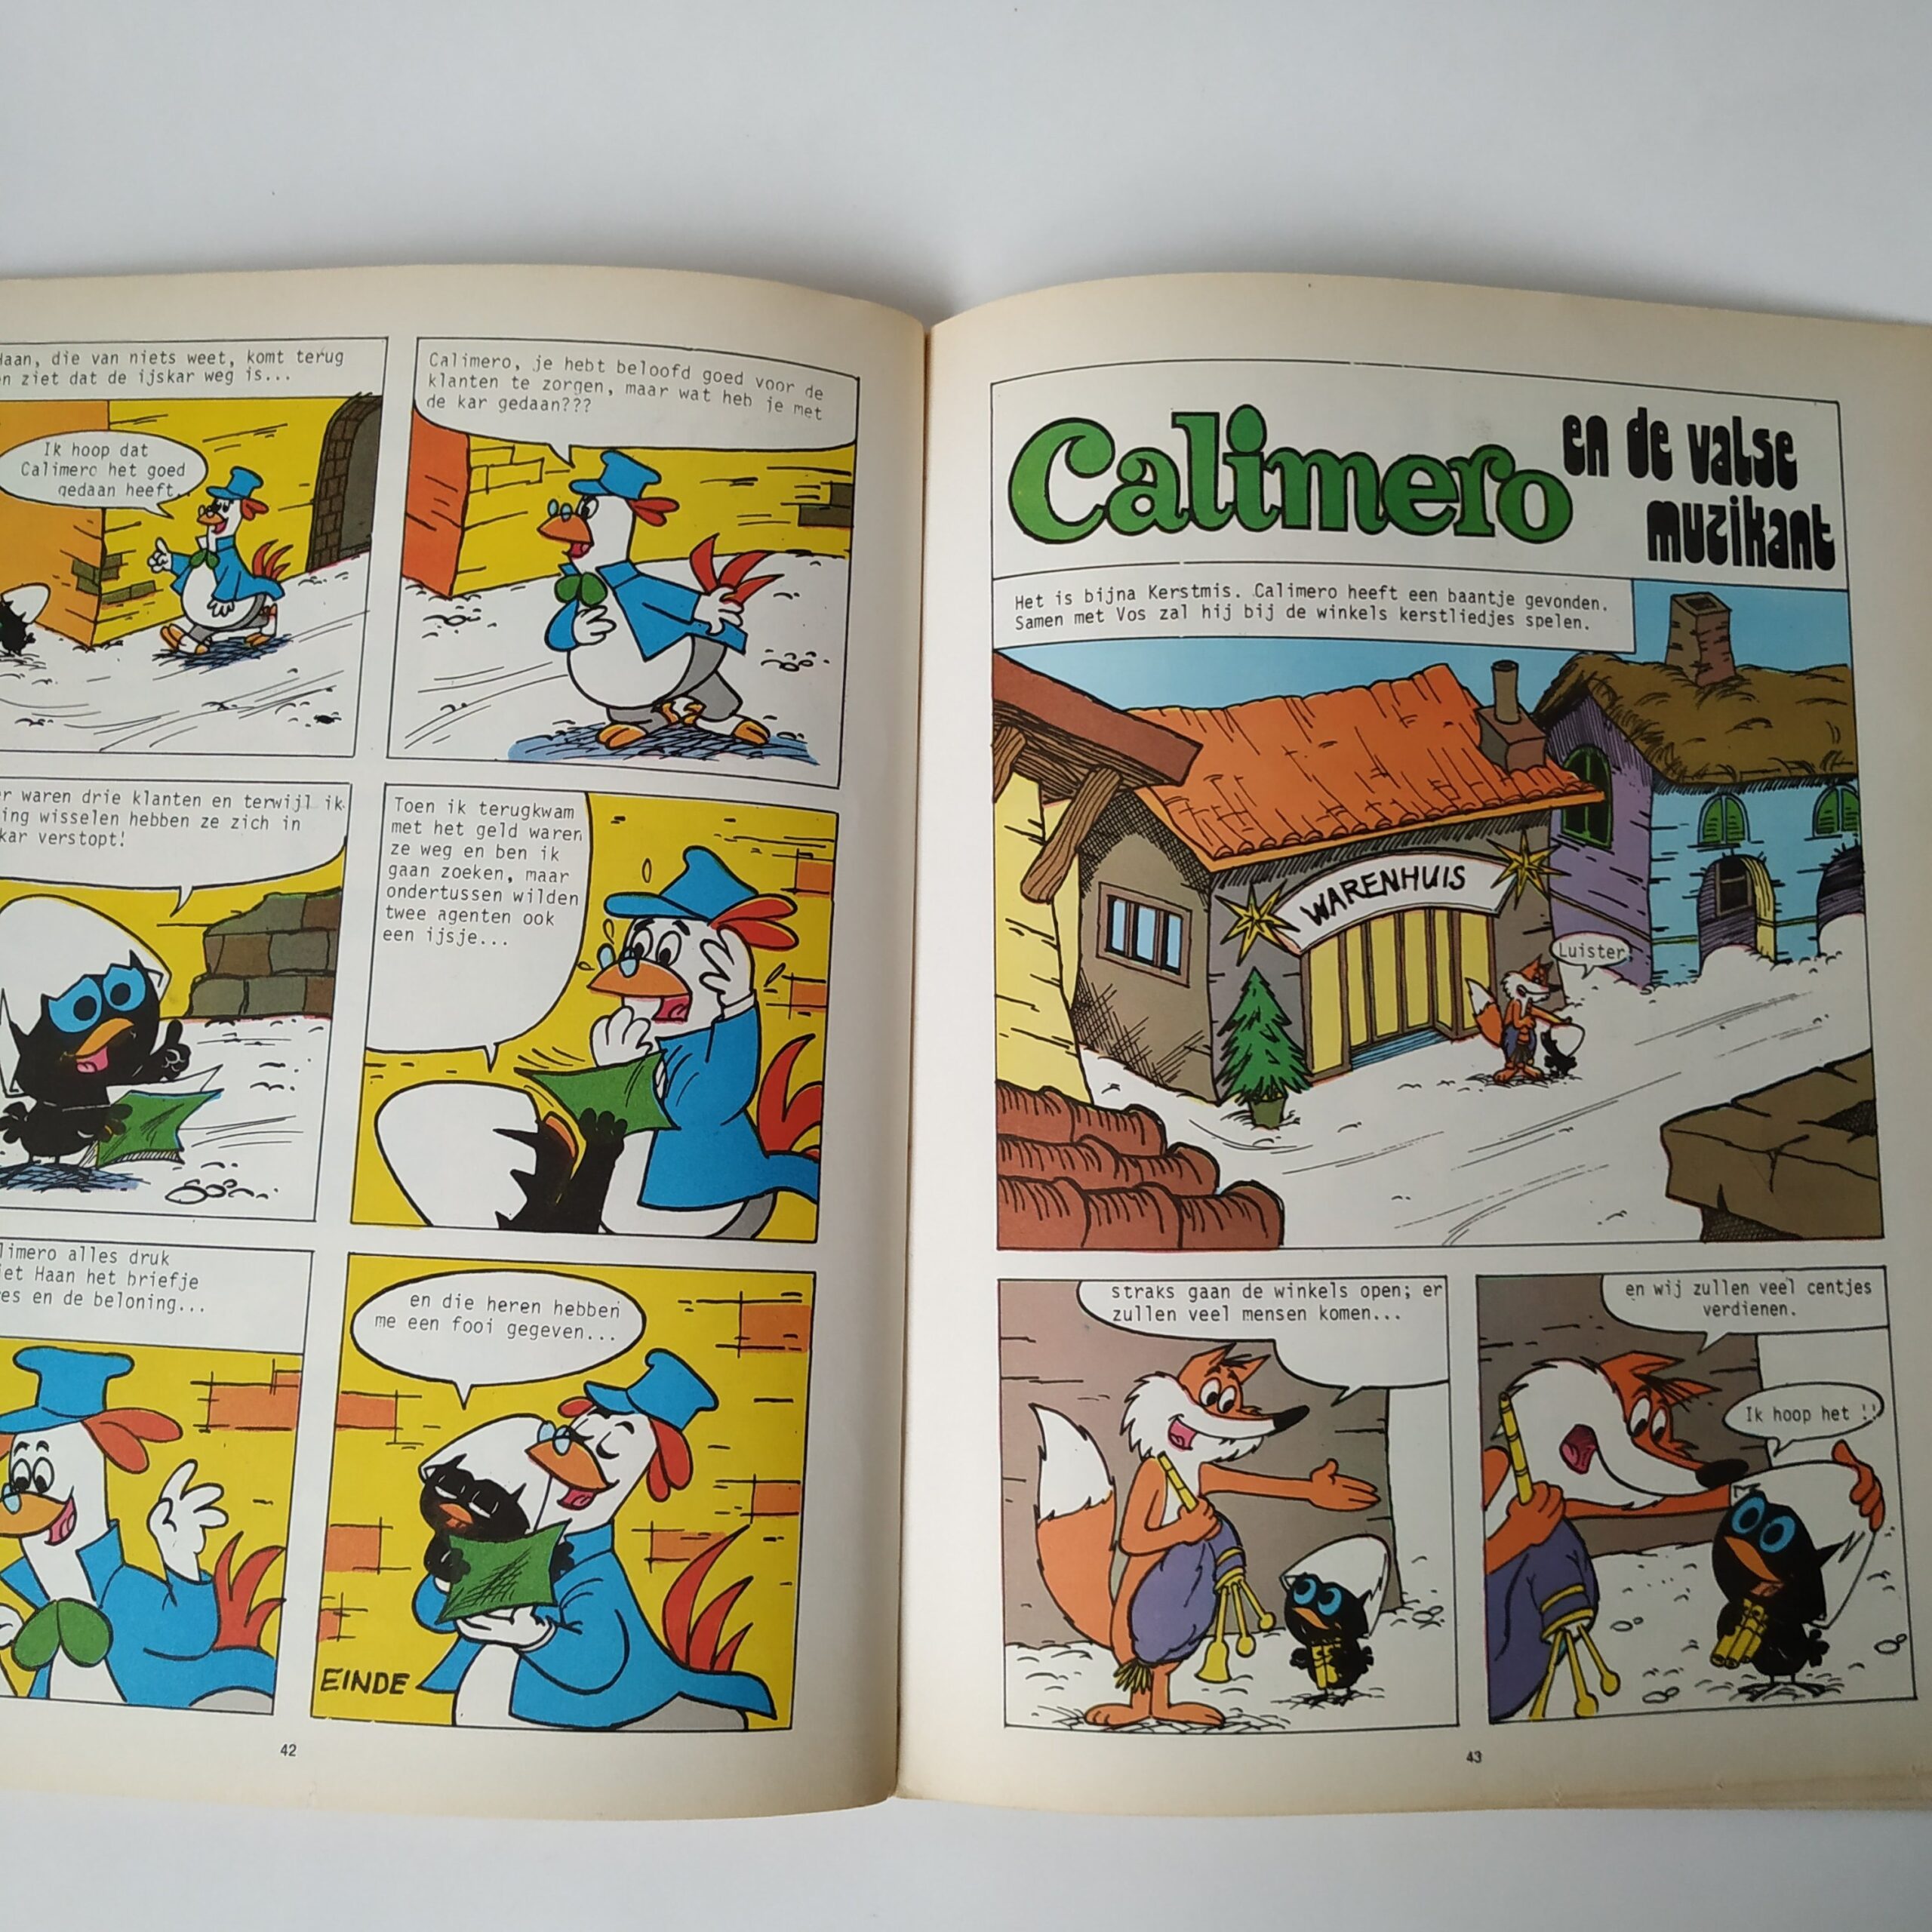 Stripboek Calimero de cowboy uit 1977 (4)